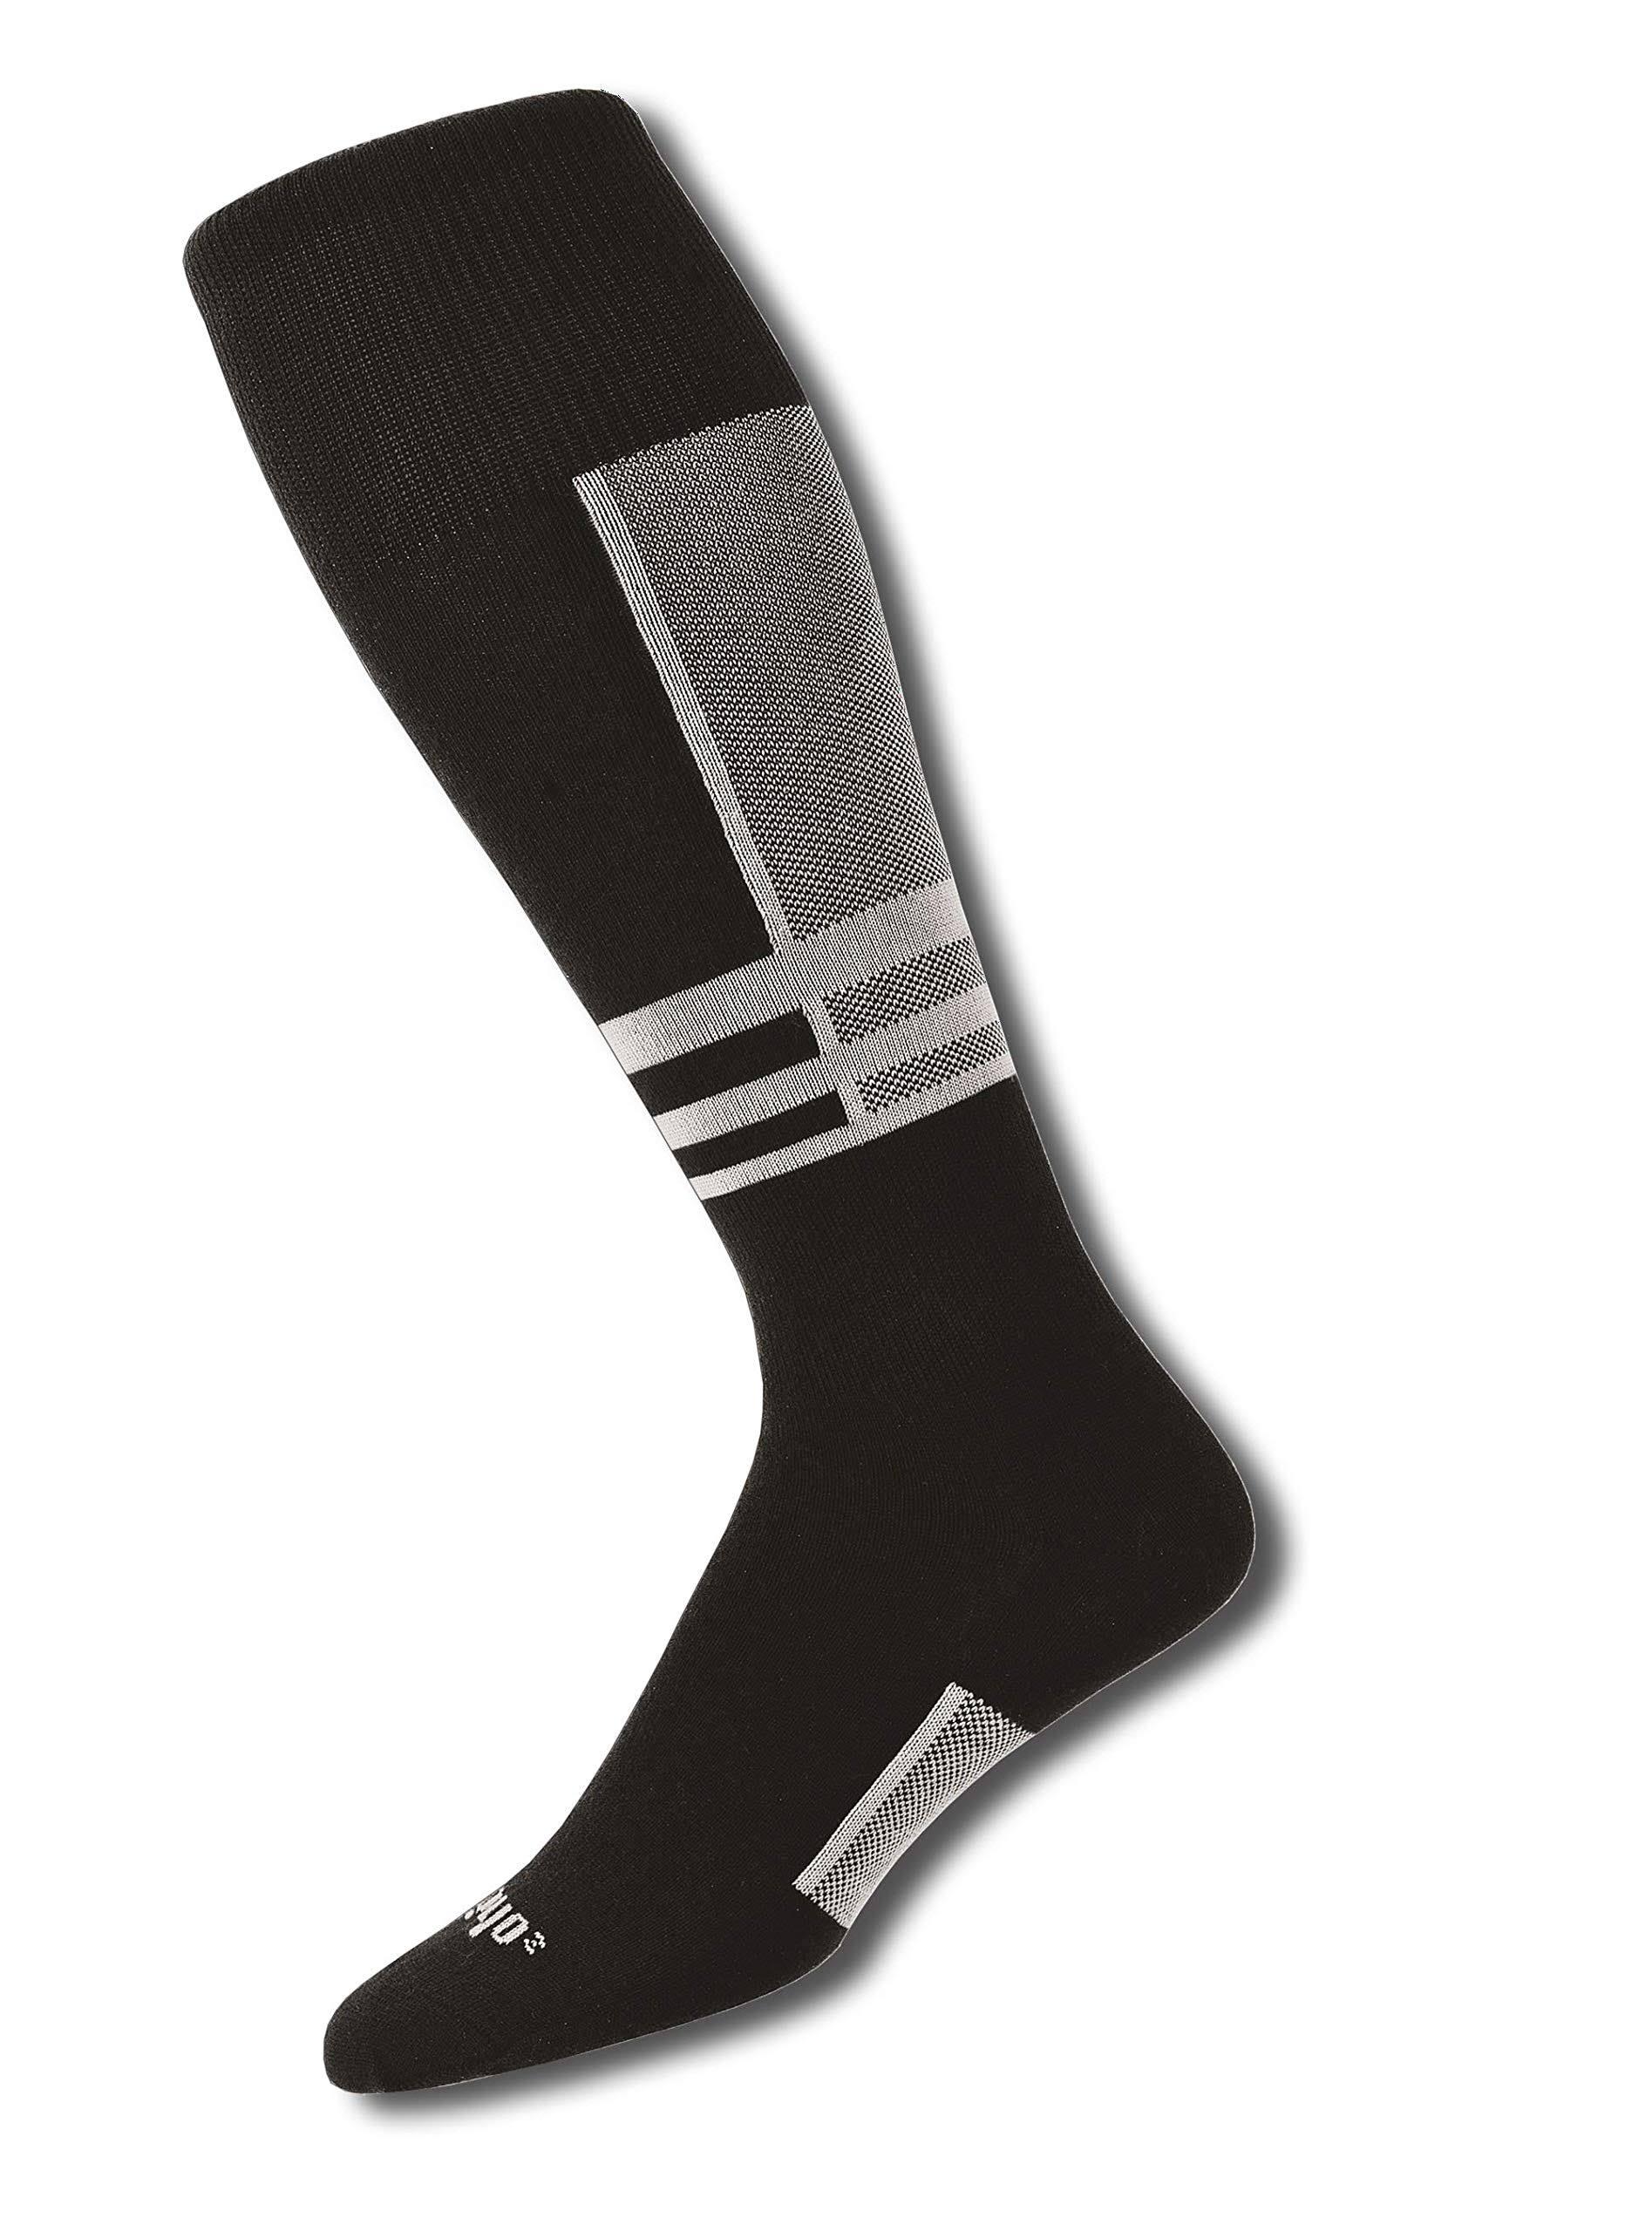 Thorlo Ultra Light Ski Liner Sock - White/Black - 11.5-13